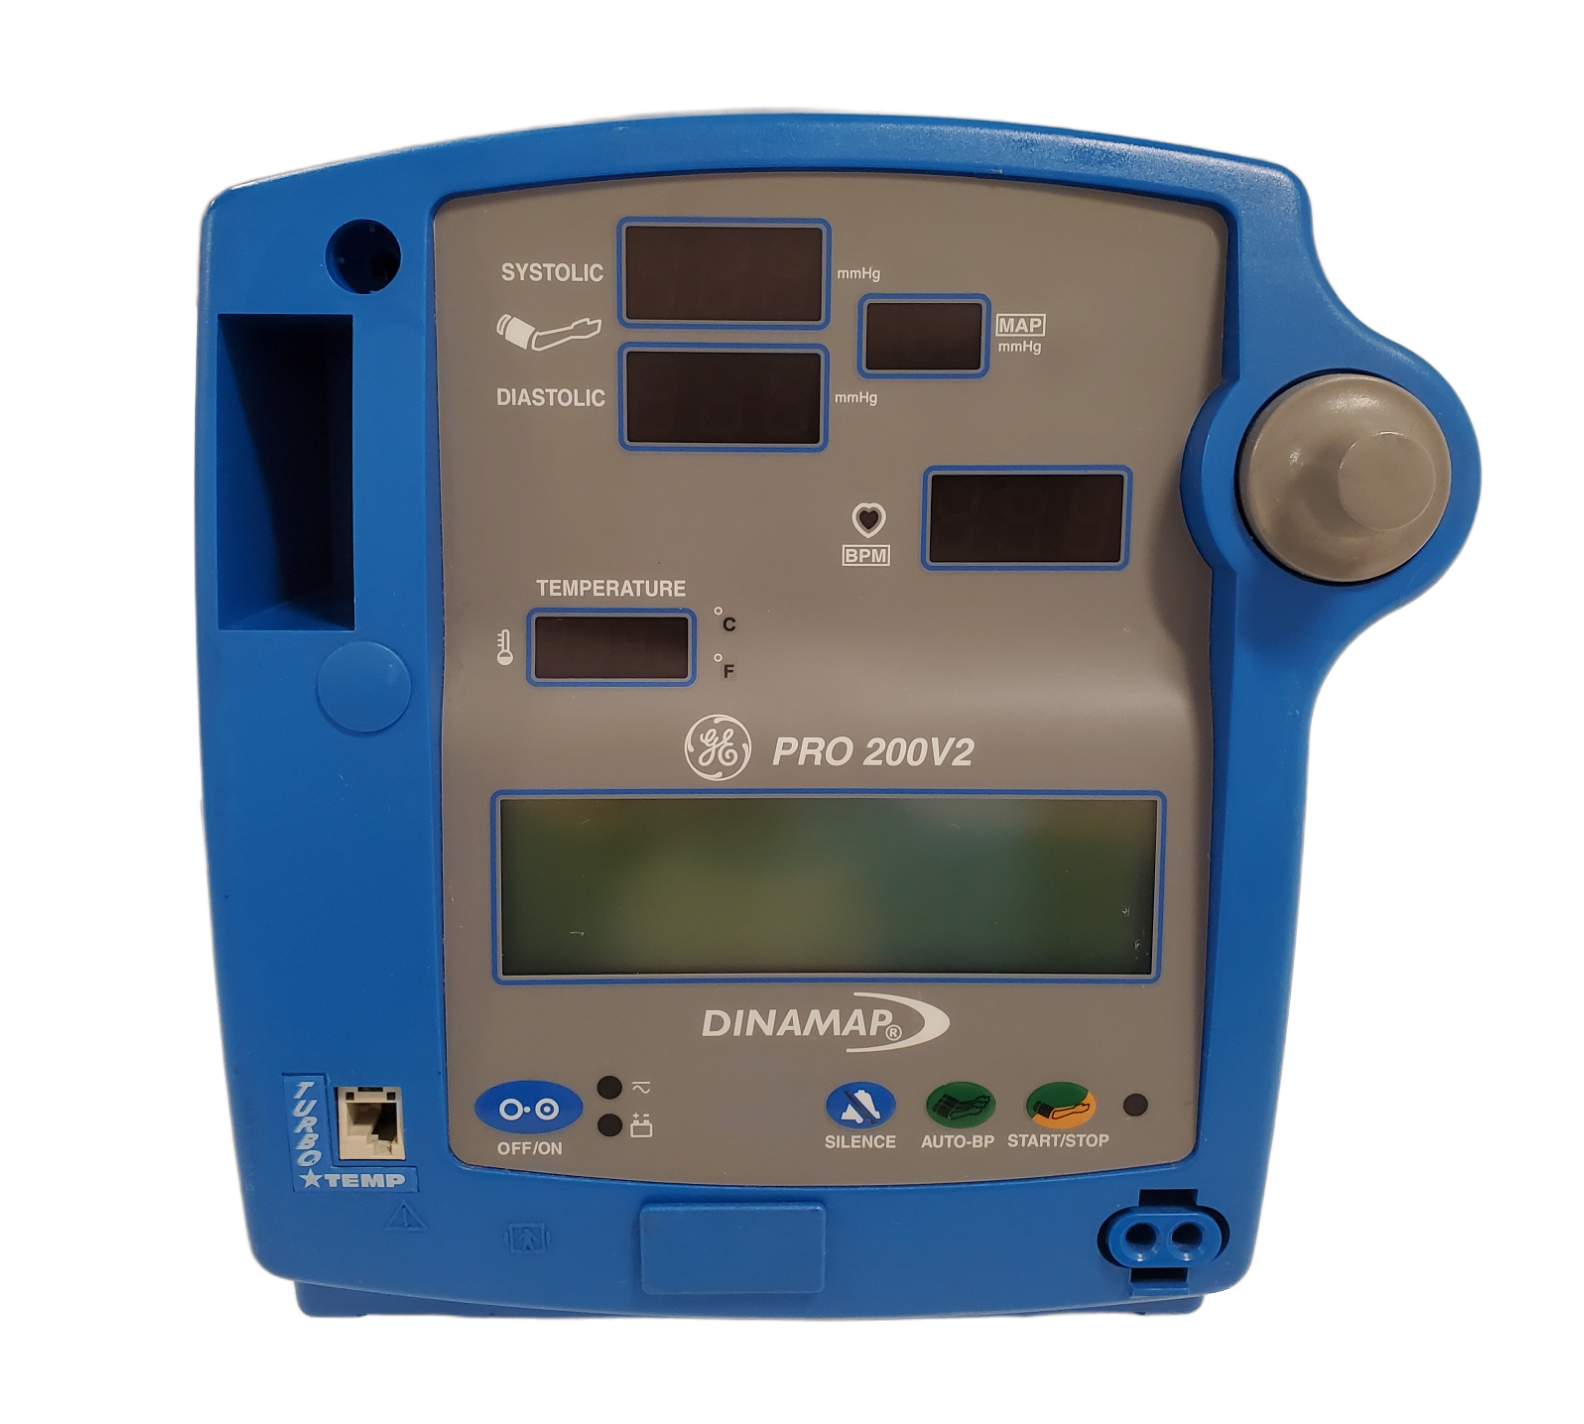 GE Dinamap Pro 200V2 Vital Signs Monitor